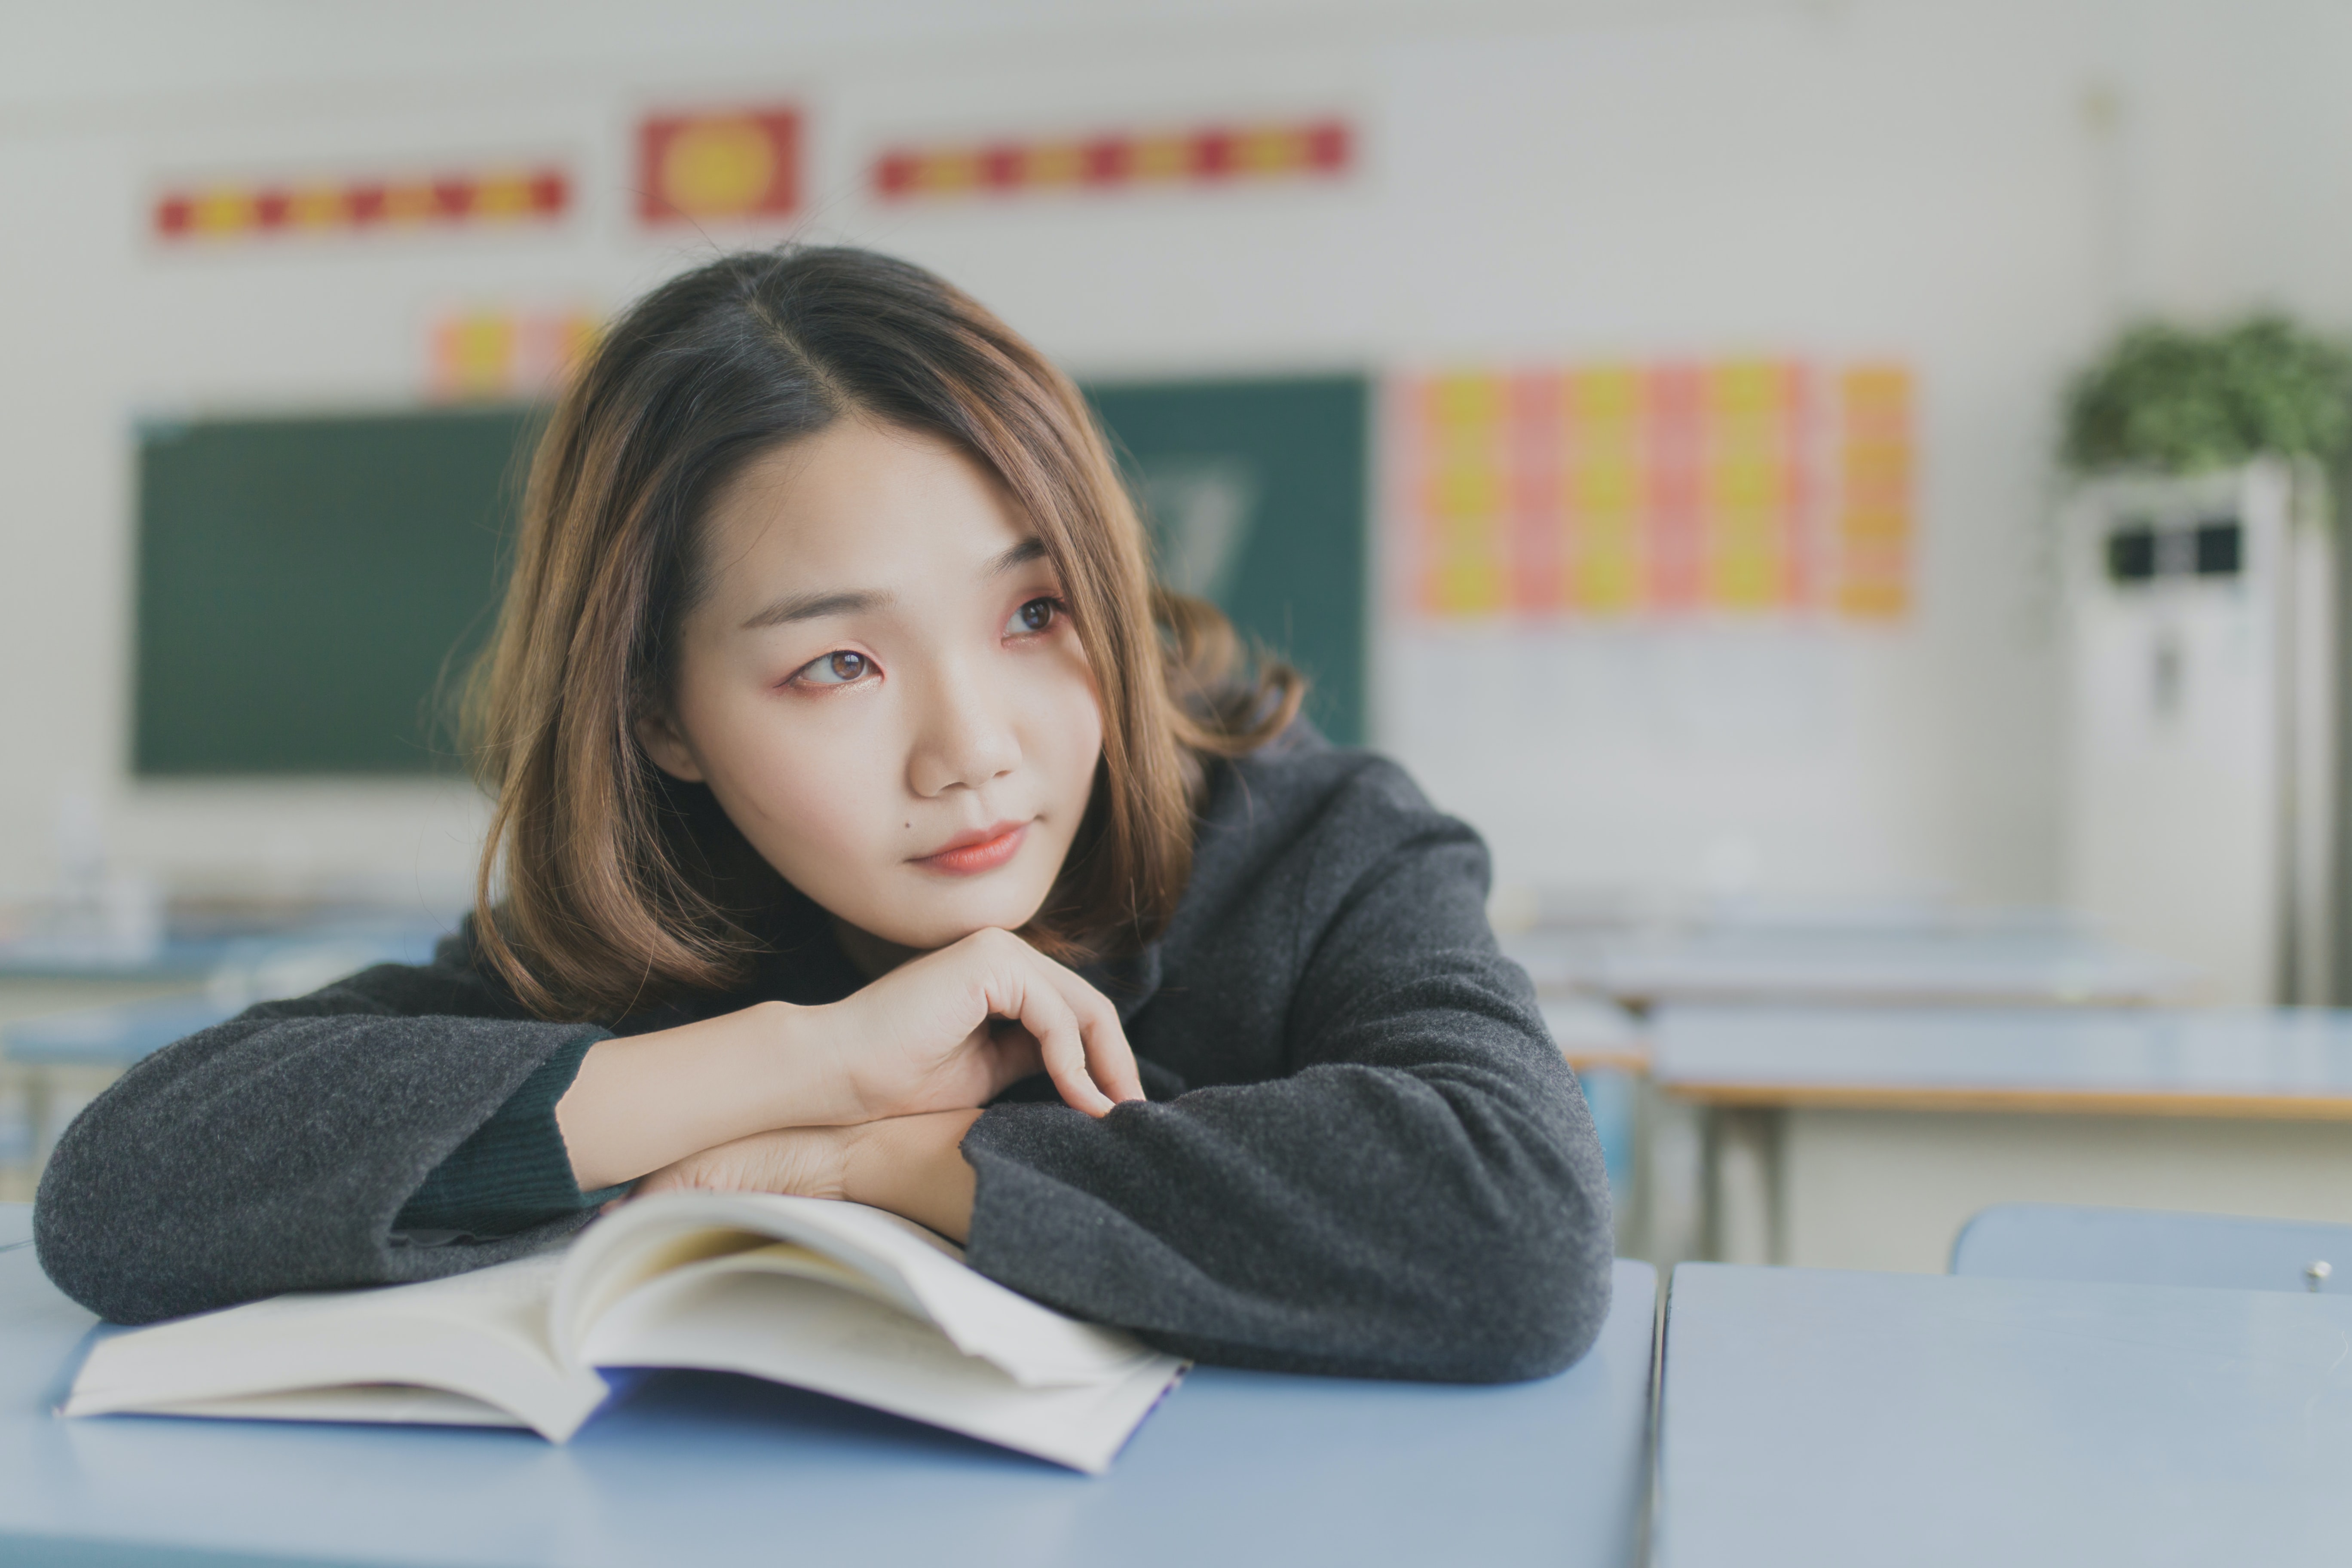 Academic Slumps Happen: How to Help Your Student